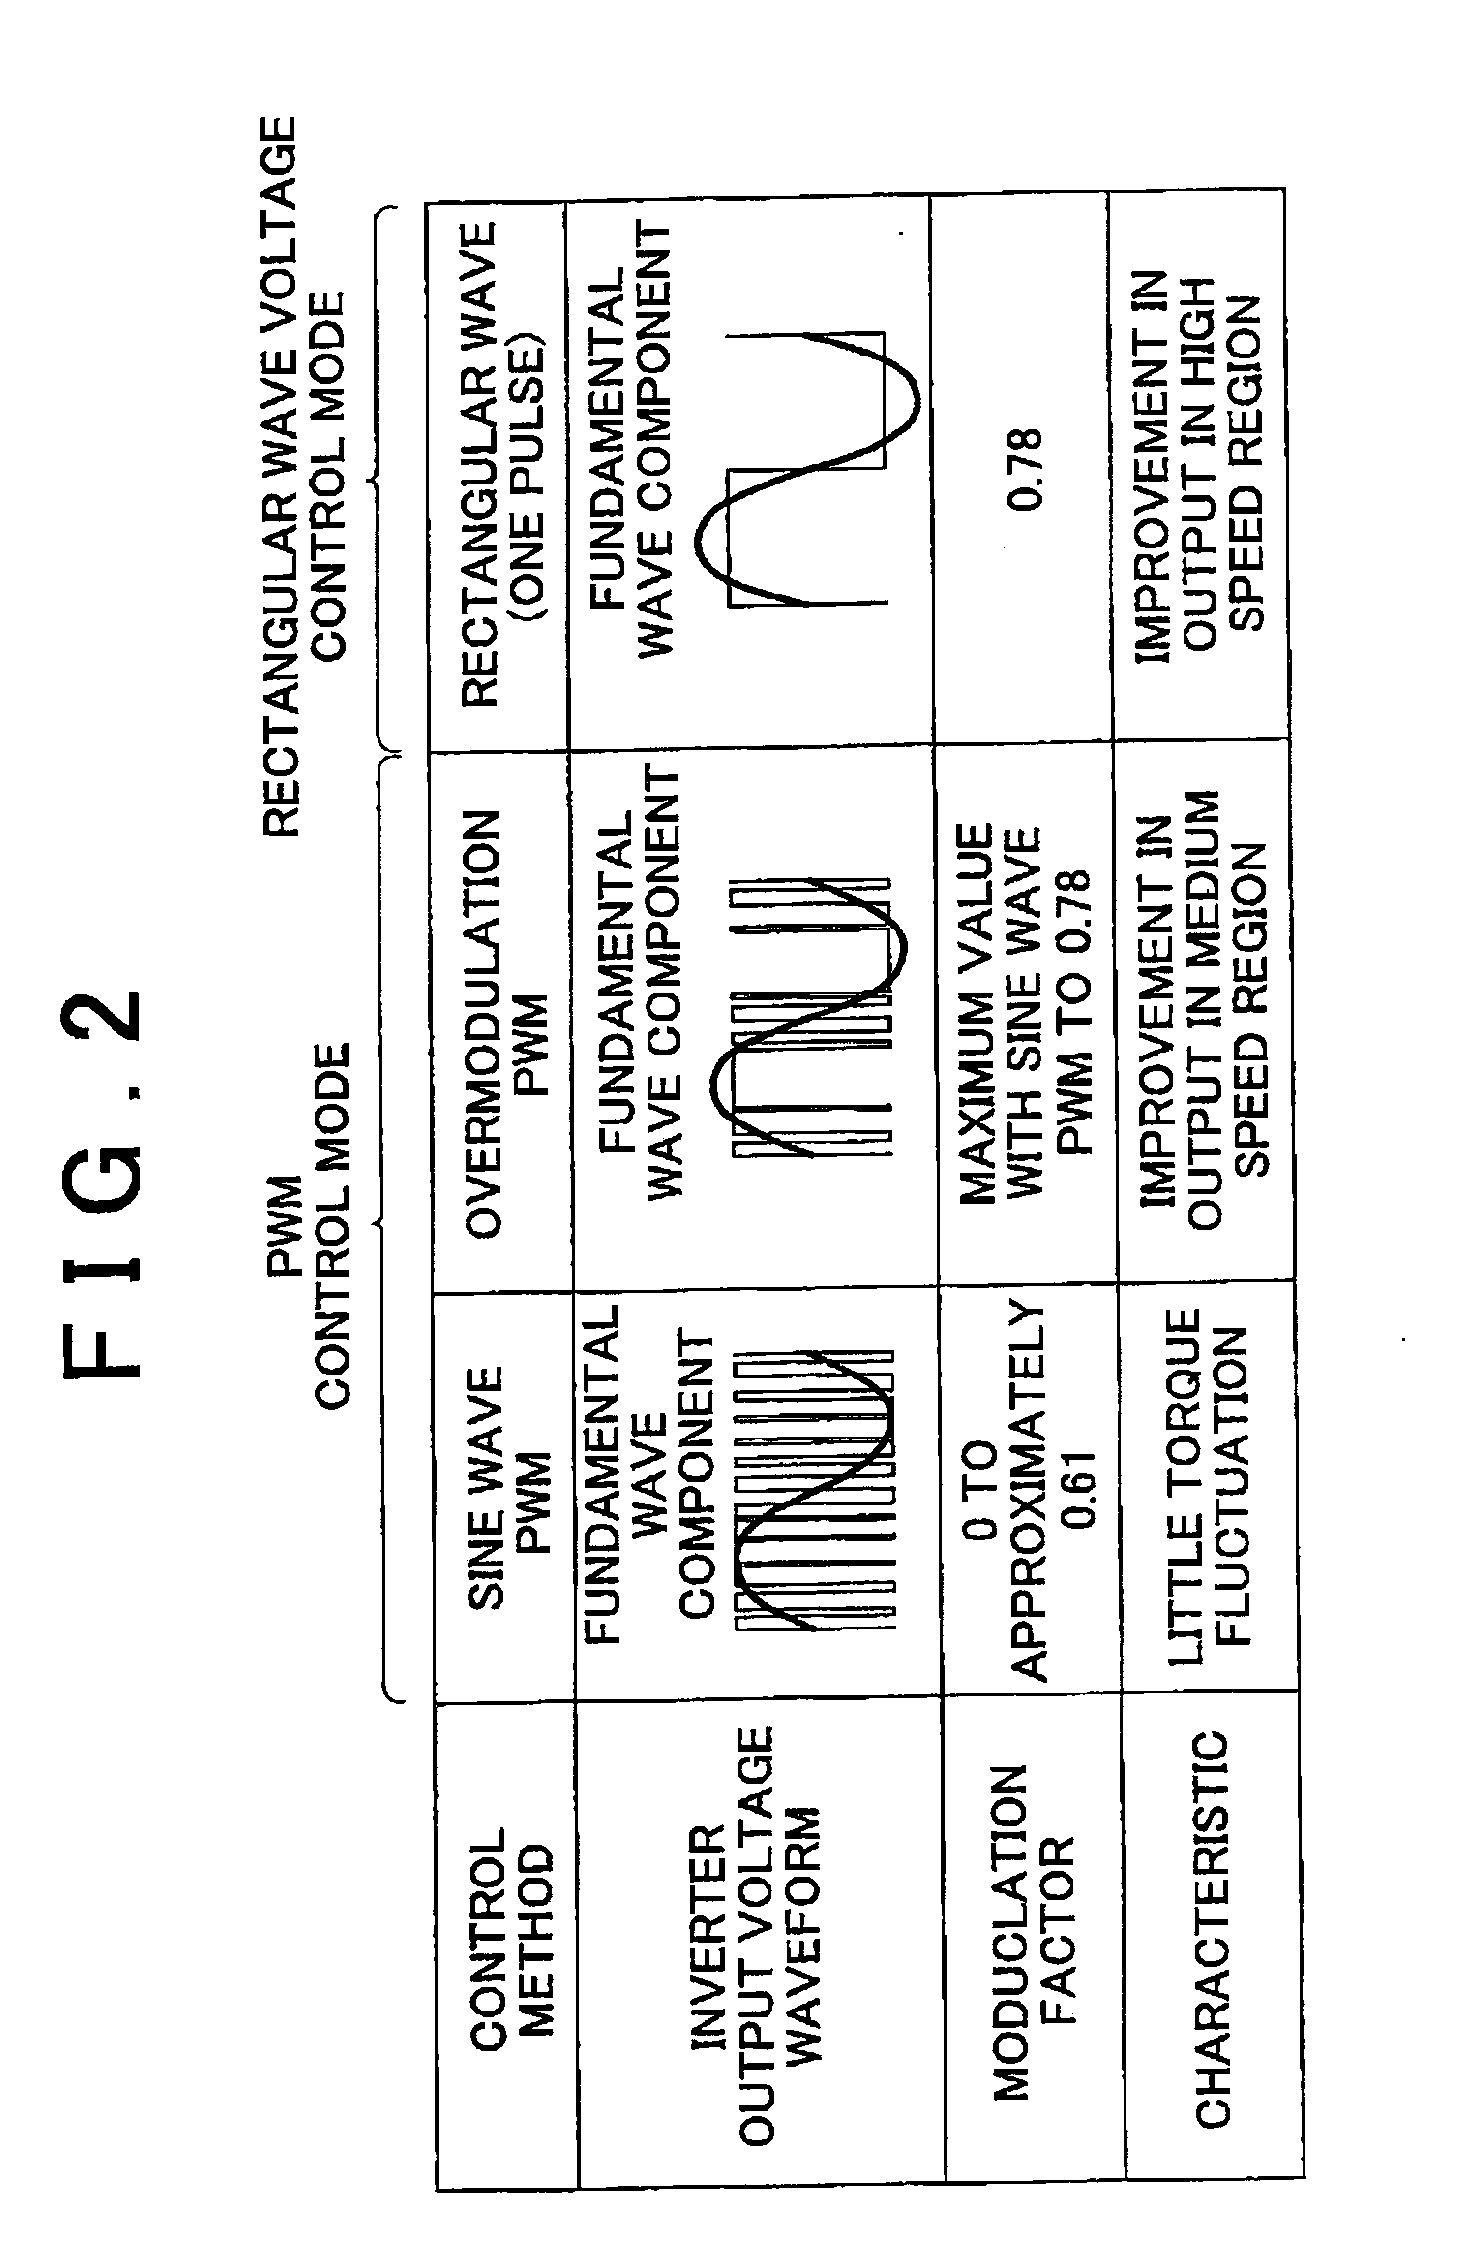 Alternating-current motor control apparatus